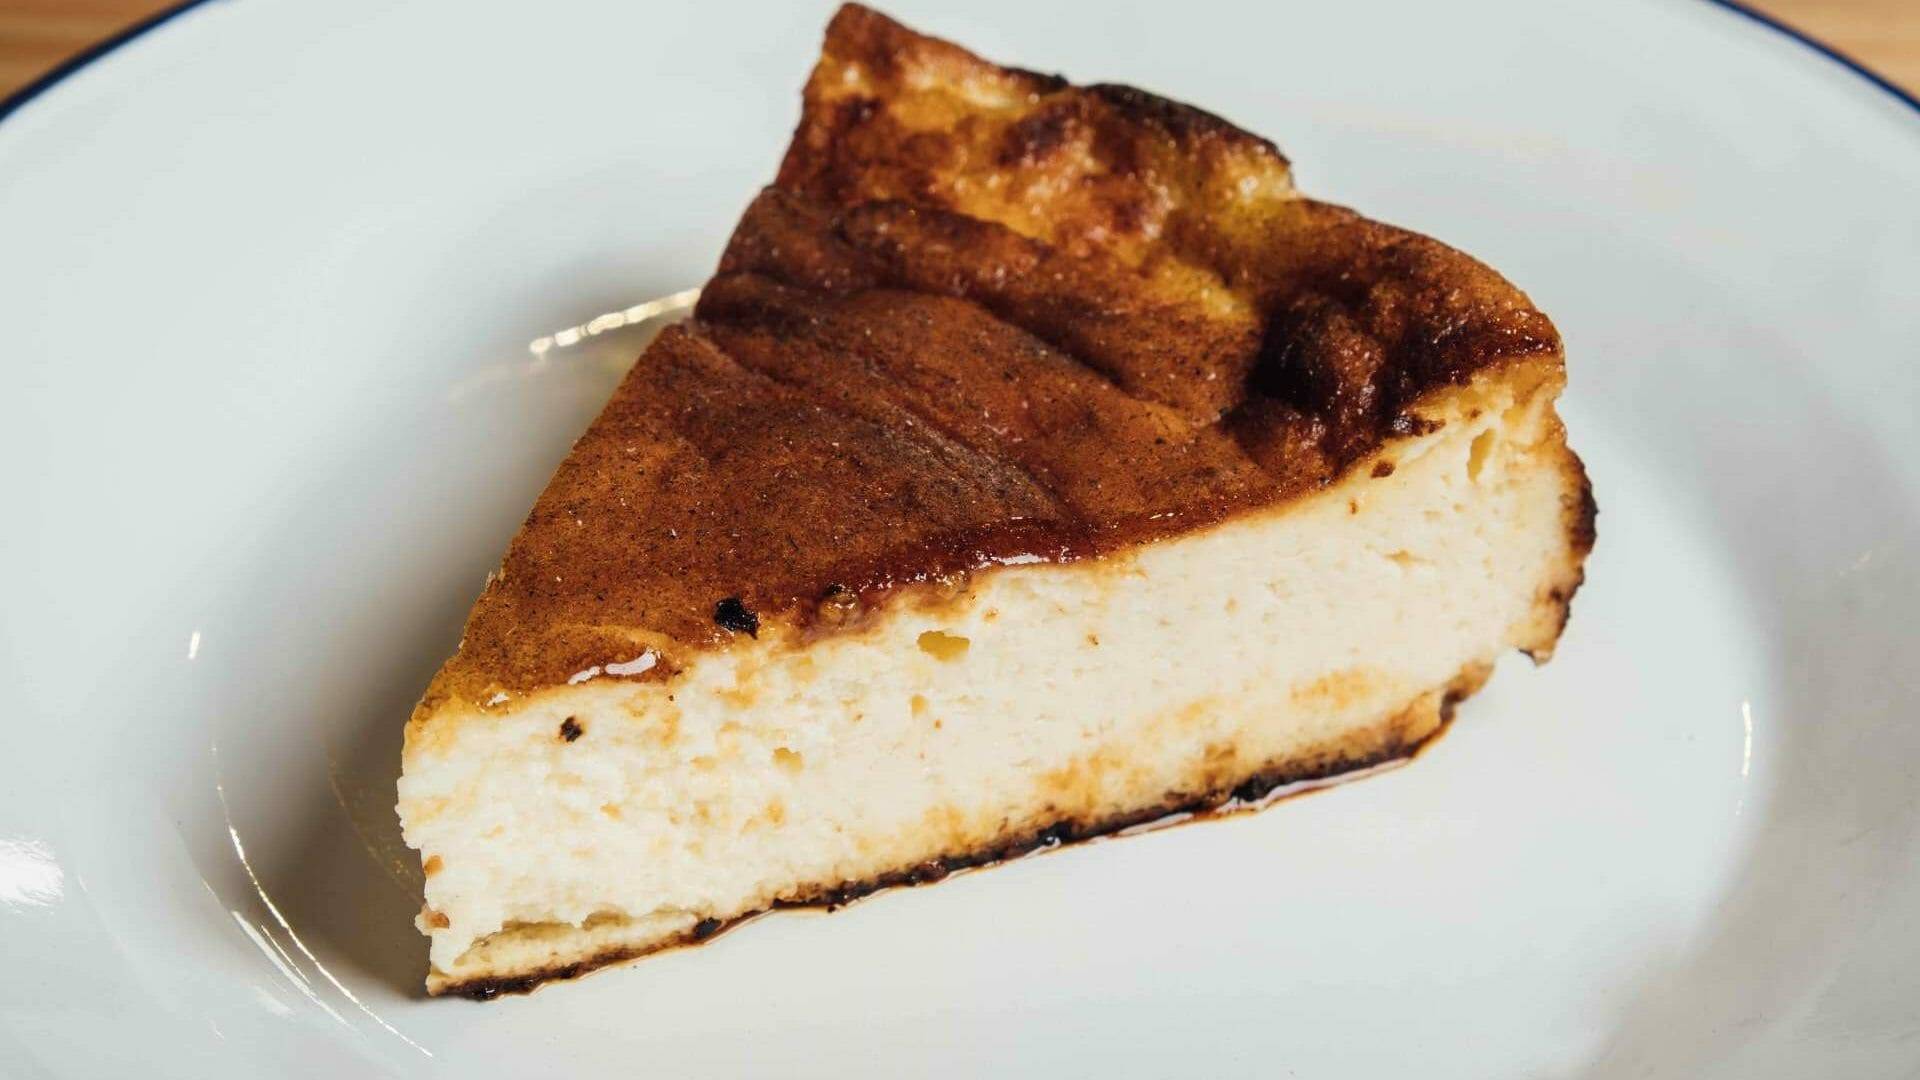 La tarta de queso se hornea a la brasa y es sin gluten.